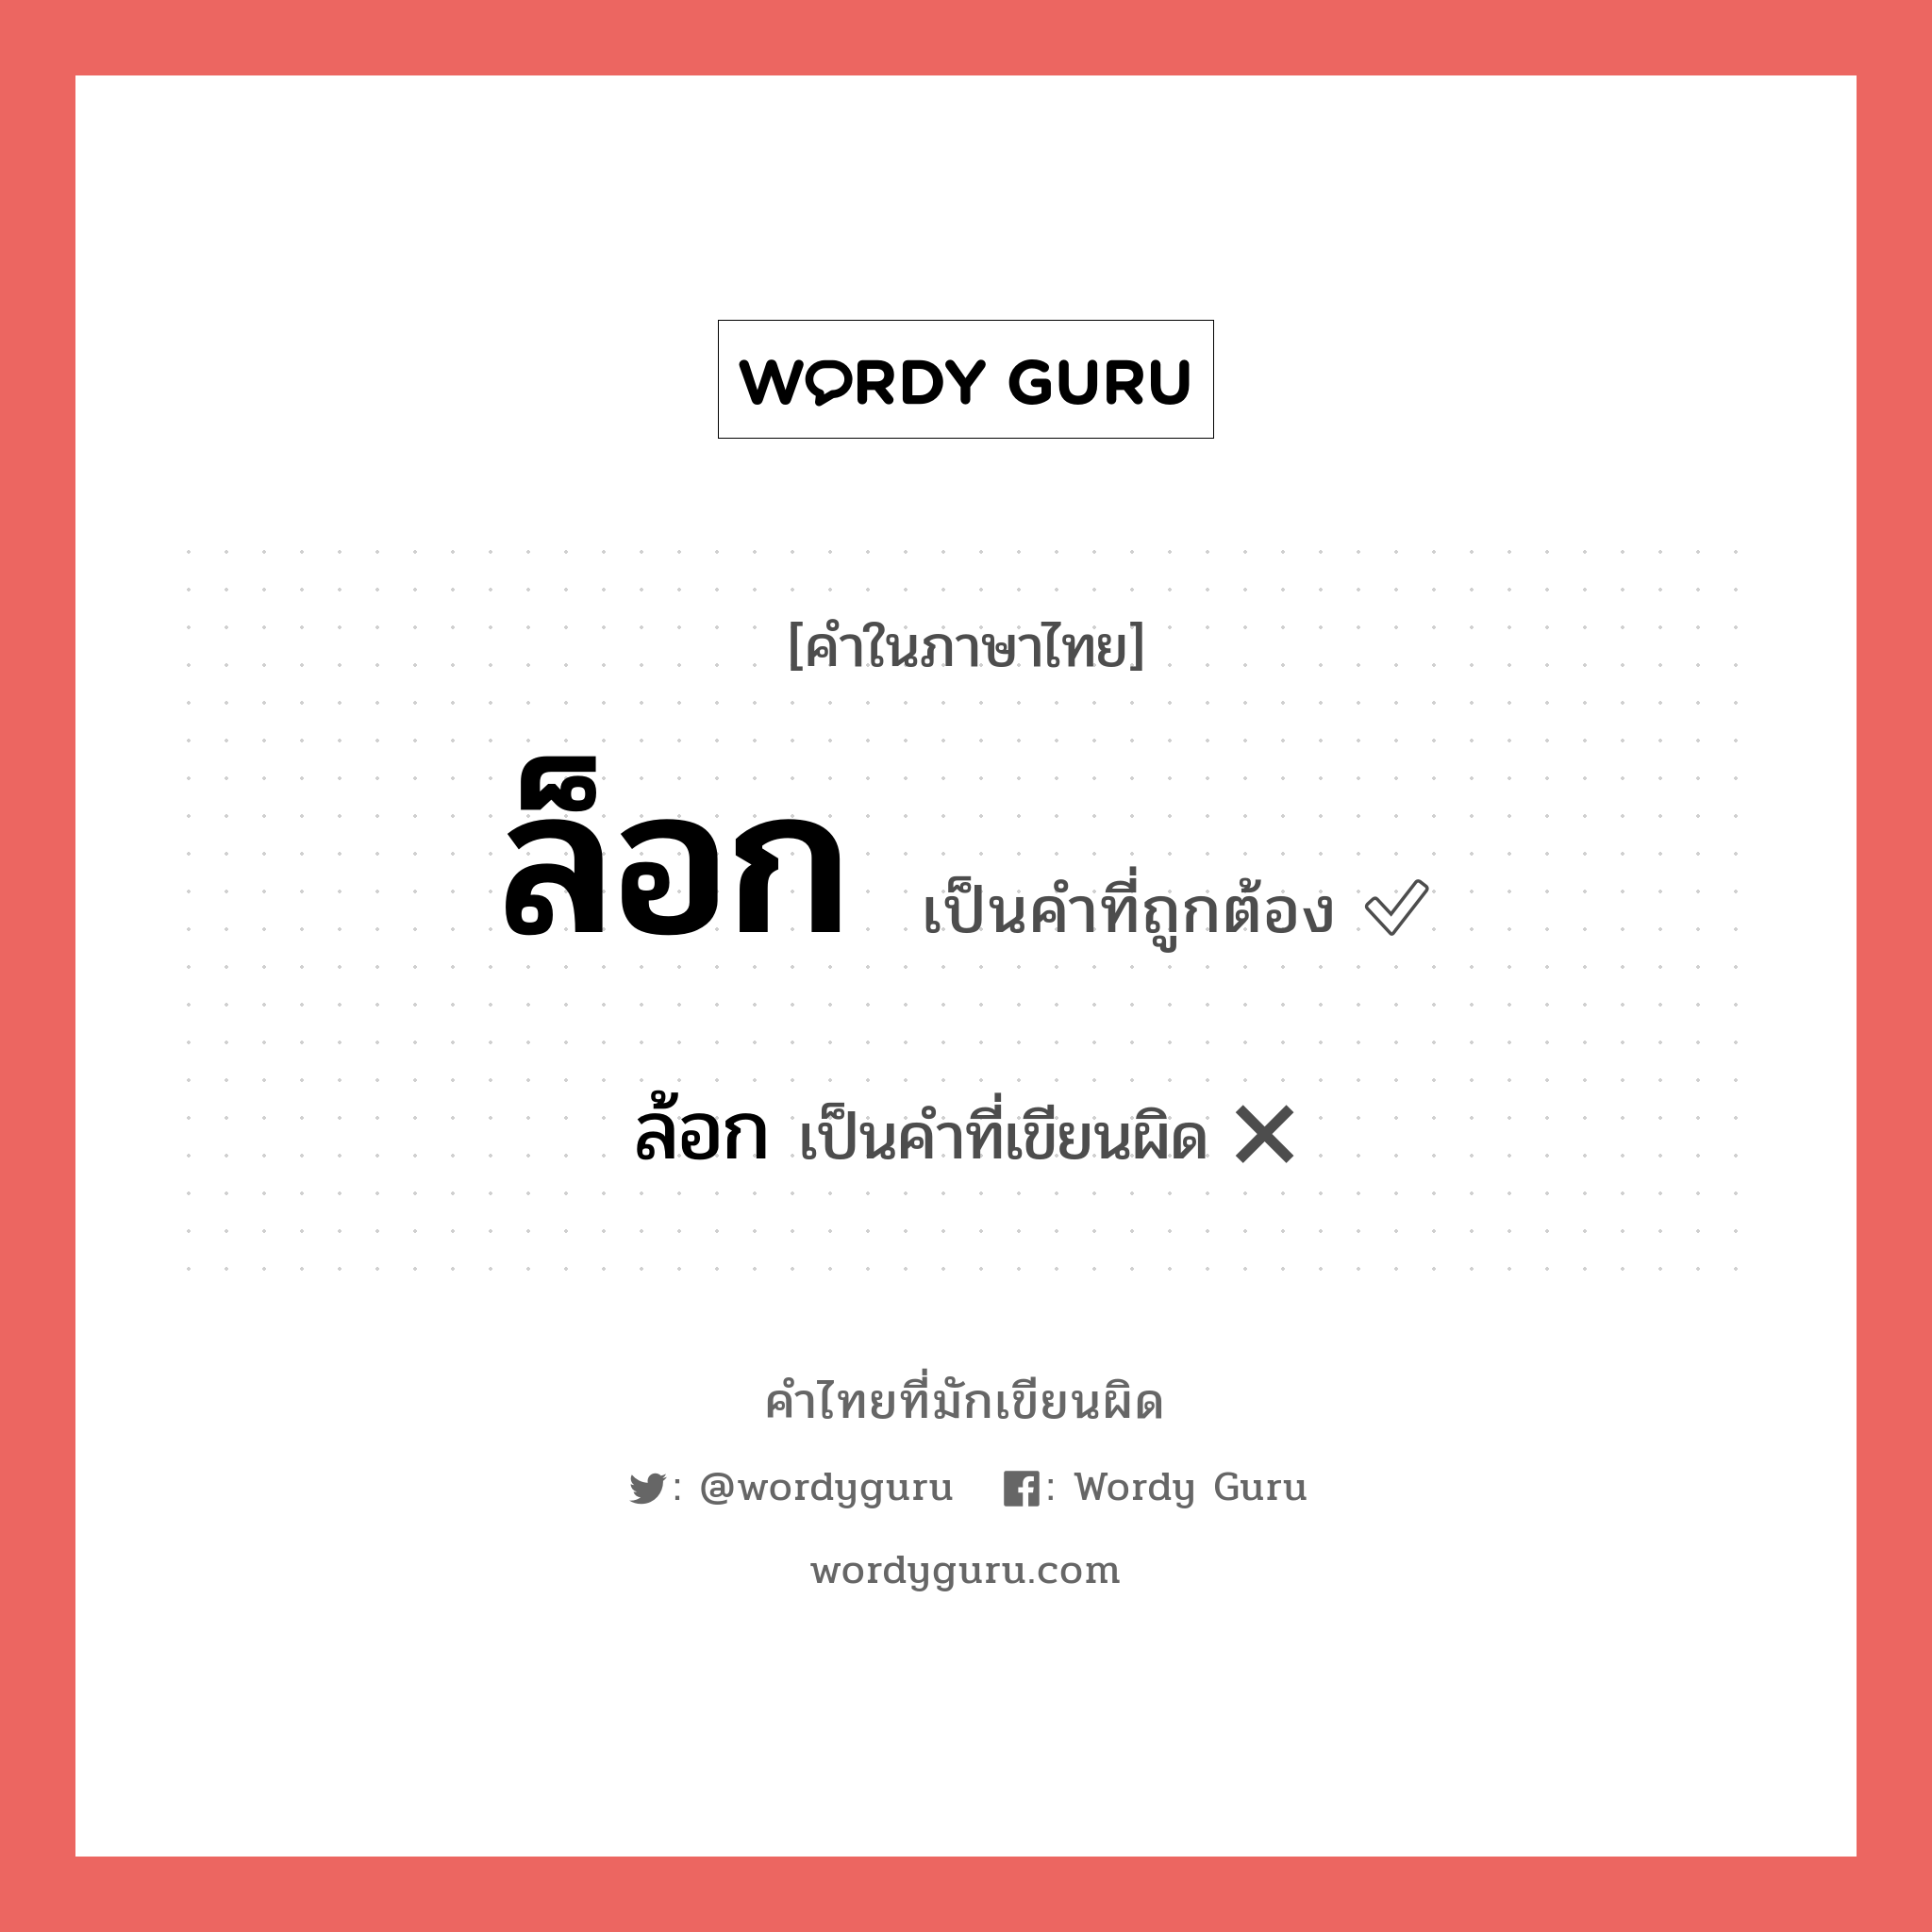 ล็อก หรือ ล้อก คำไหนเขียนถูก?, คำในภาษาไทยที่มักเขียนผิด ล็อก คำที่ผิด ❌ ล้อก